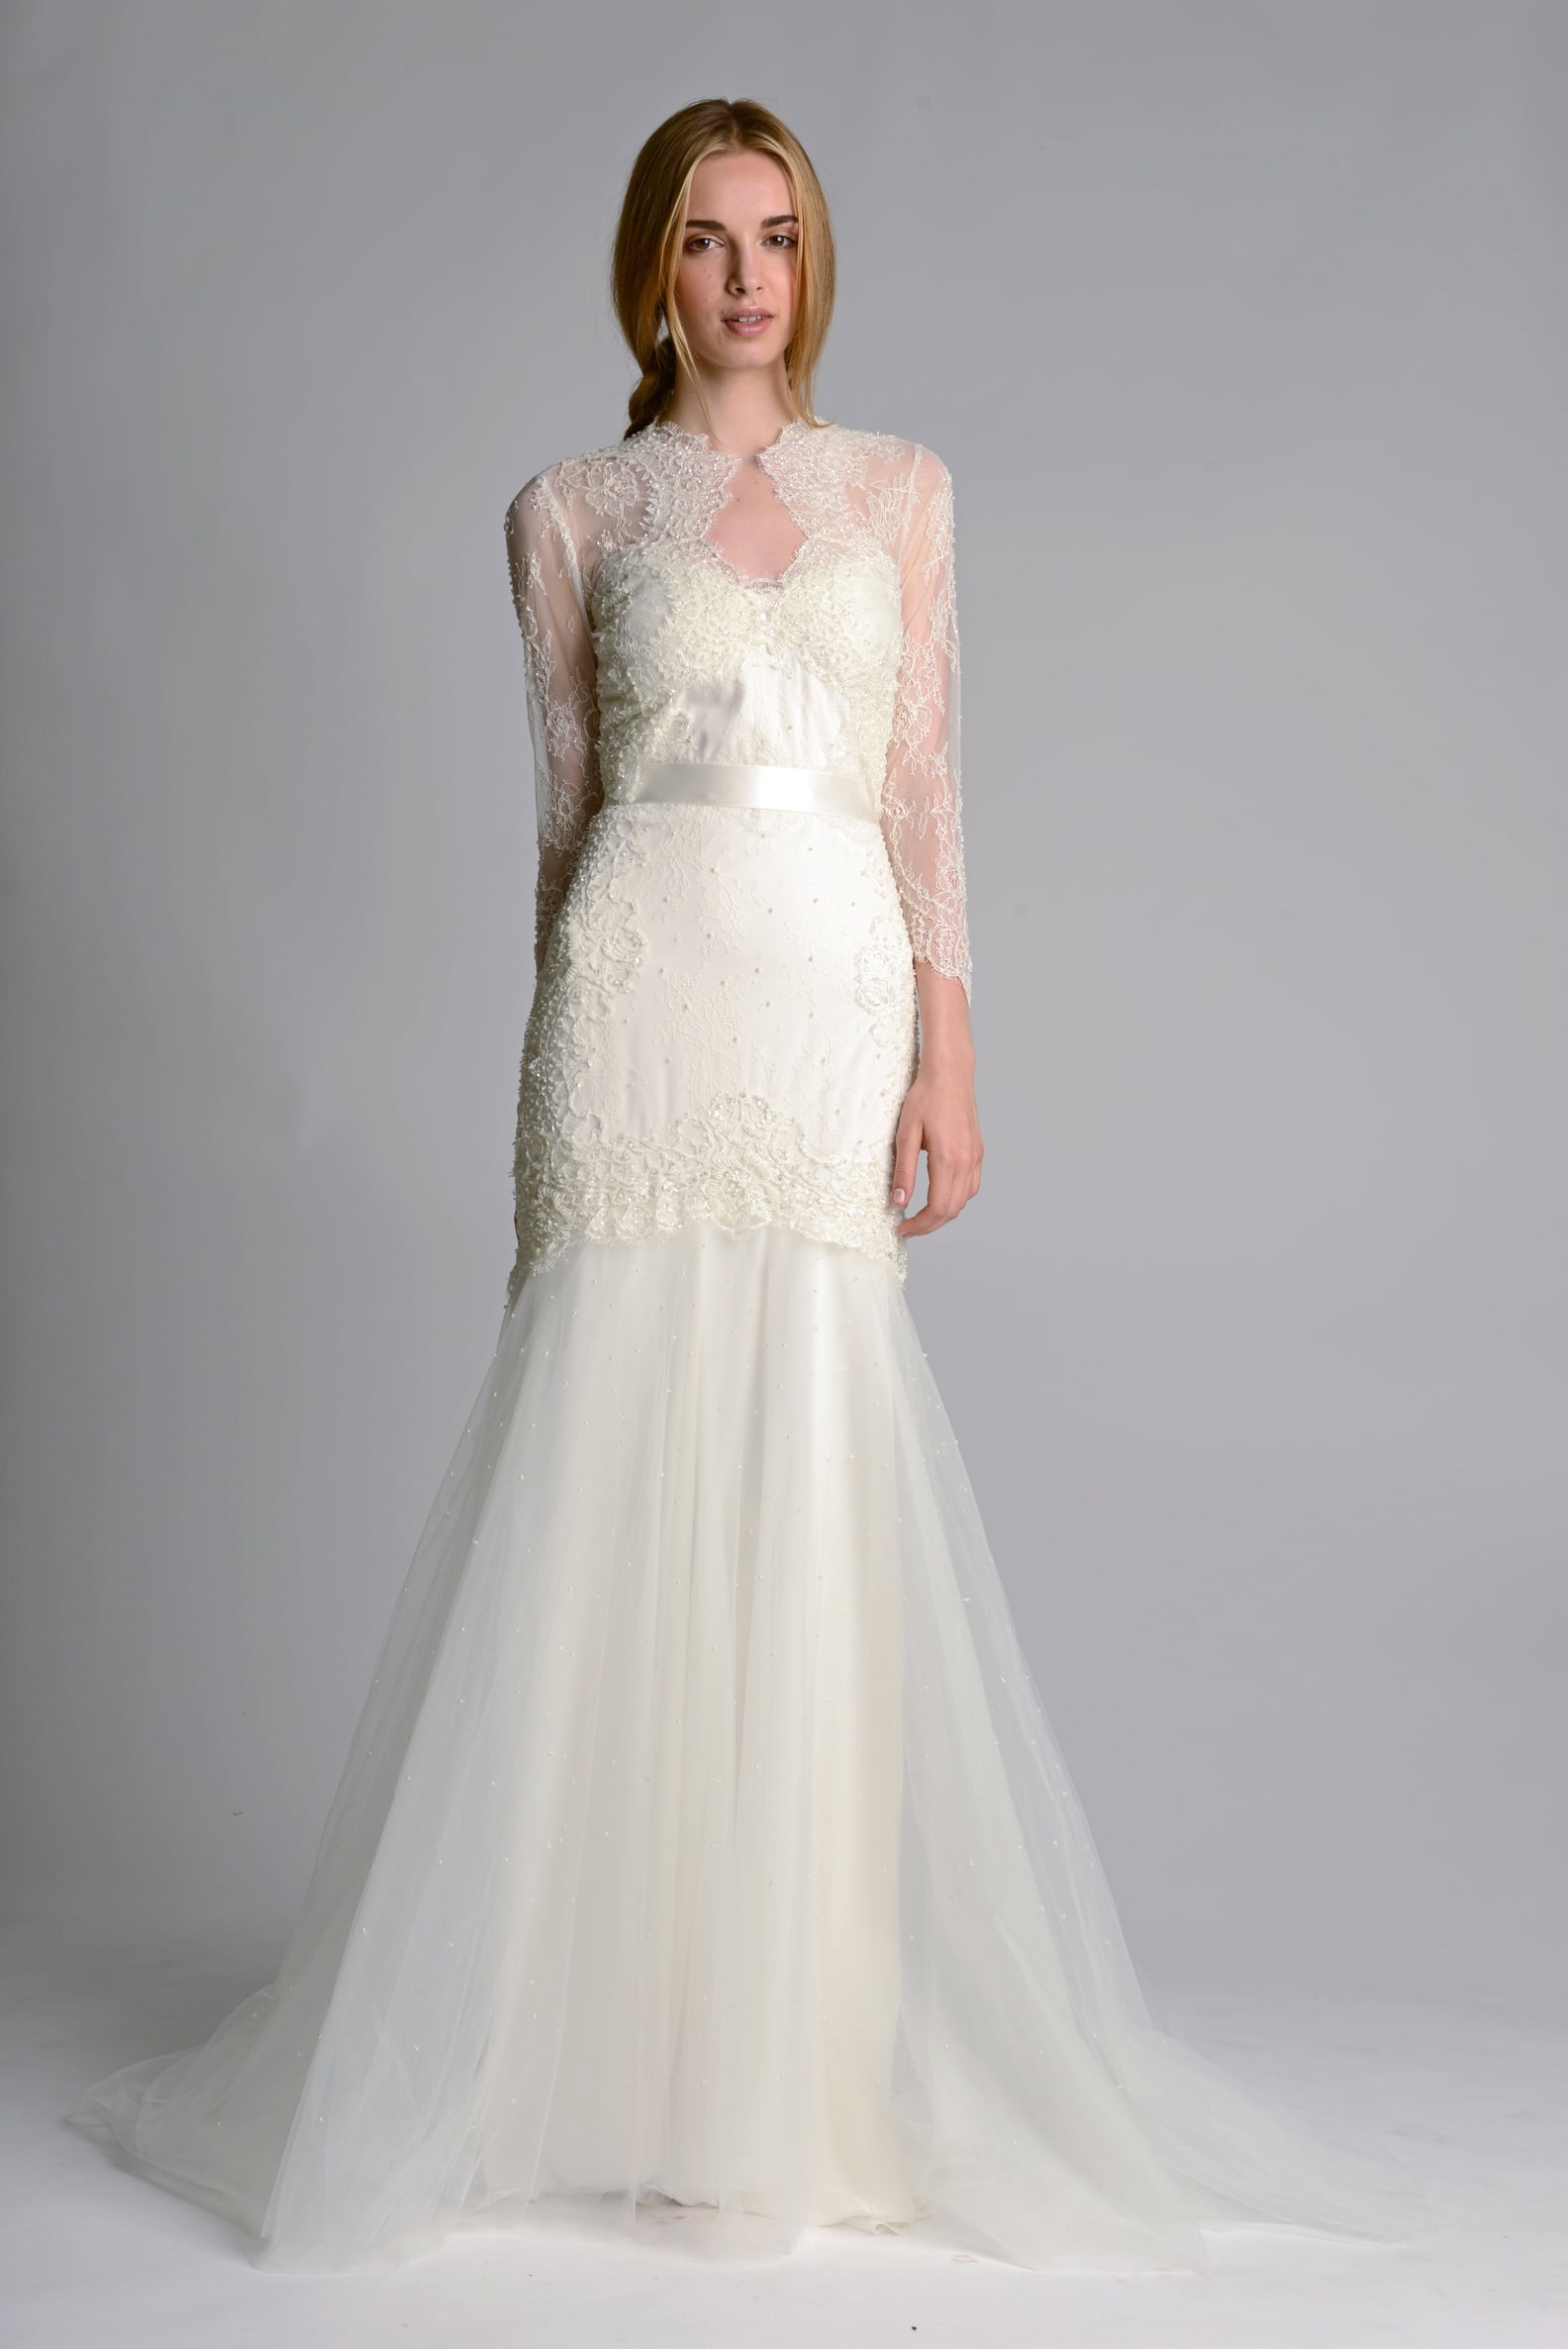 Bridal Fashion Week Wedding Dress Trends Fall 2014 | POPSUGAR Fashion